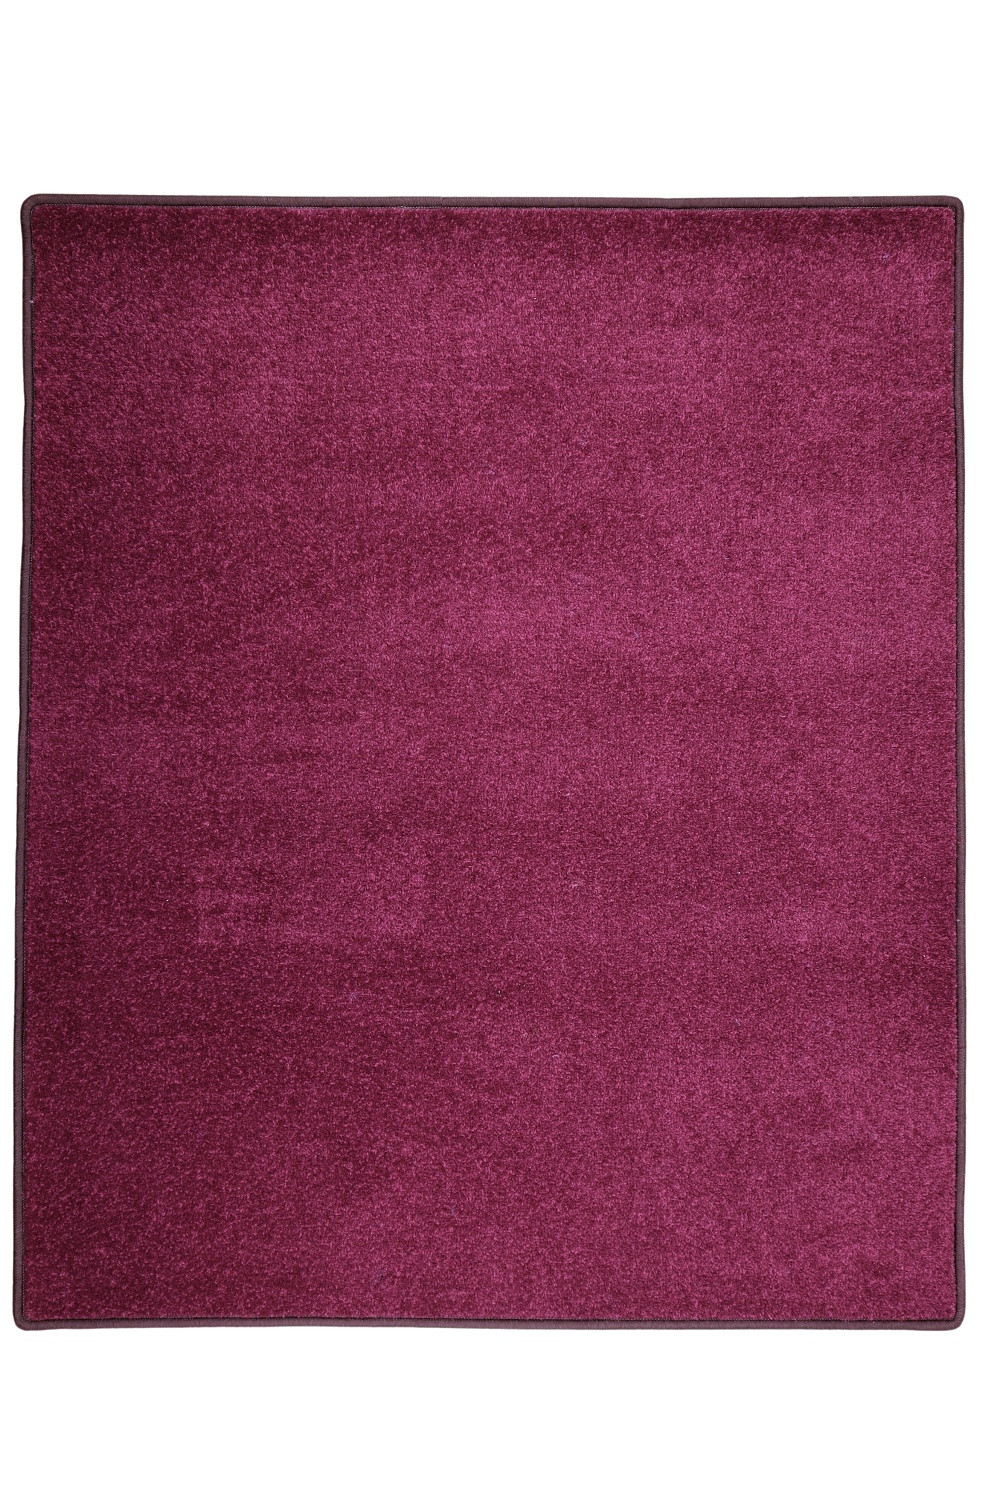 Kusový koberec Eton fialový 48 - 200x300 cm Vopi koberce 